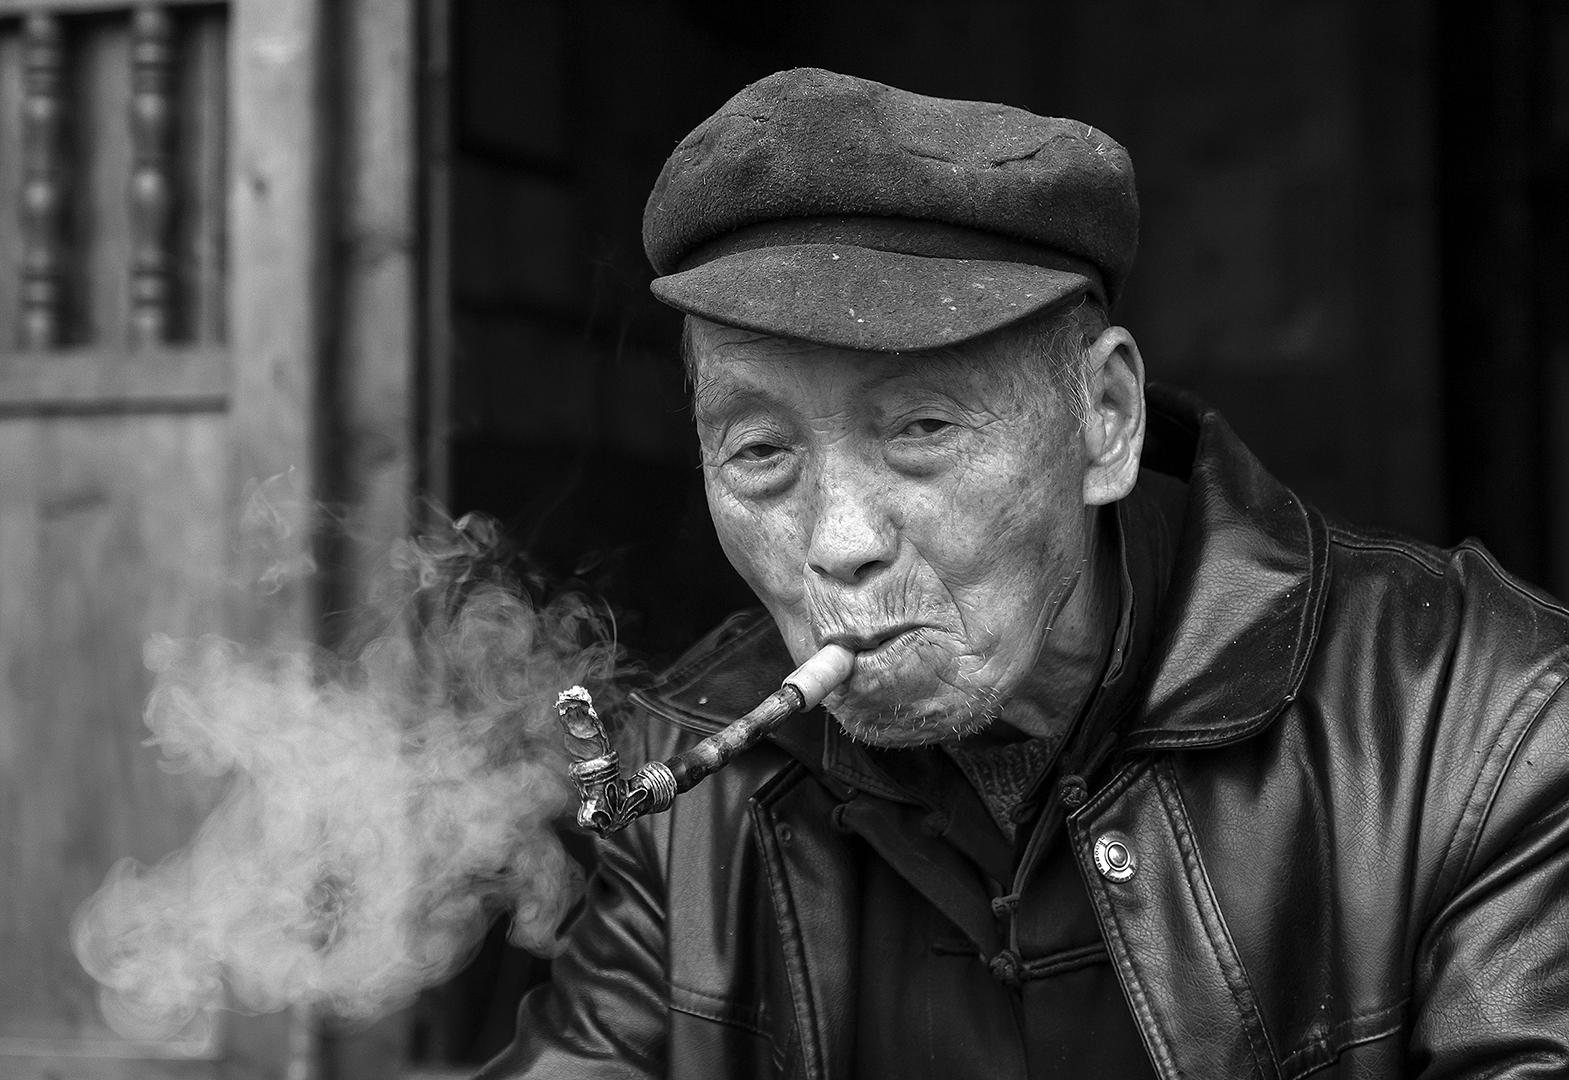 The smoker 2 (Asbjørn M Olsen)